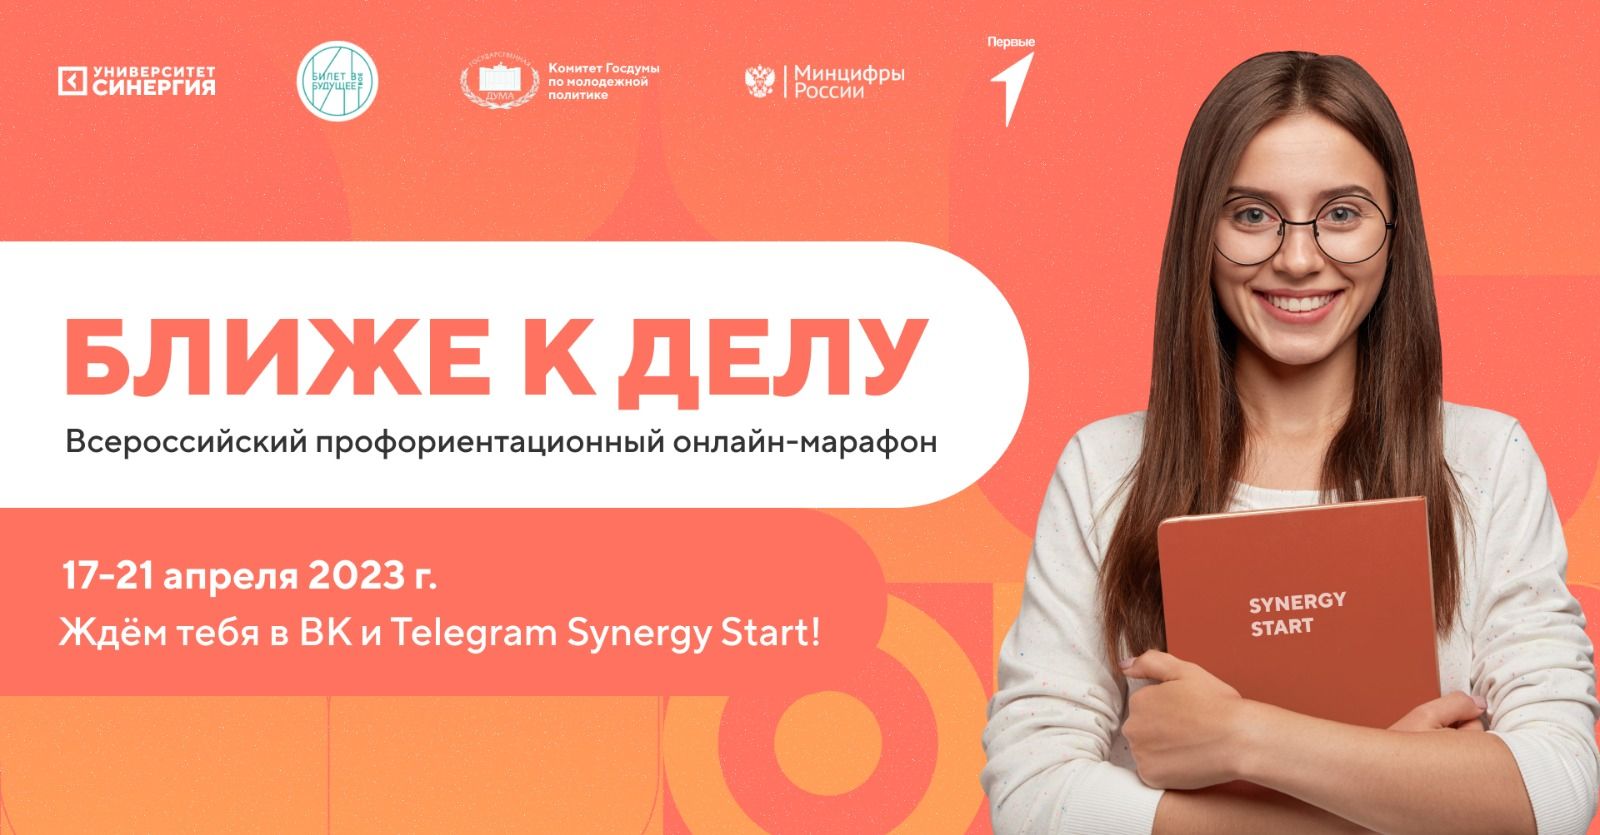  Студентов АГПК приглашают принять участие во Всероссийском профориентационном онлайн-марафоне